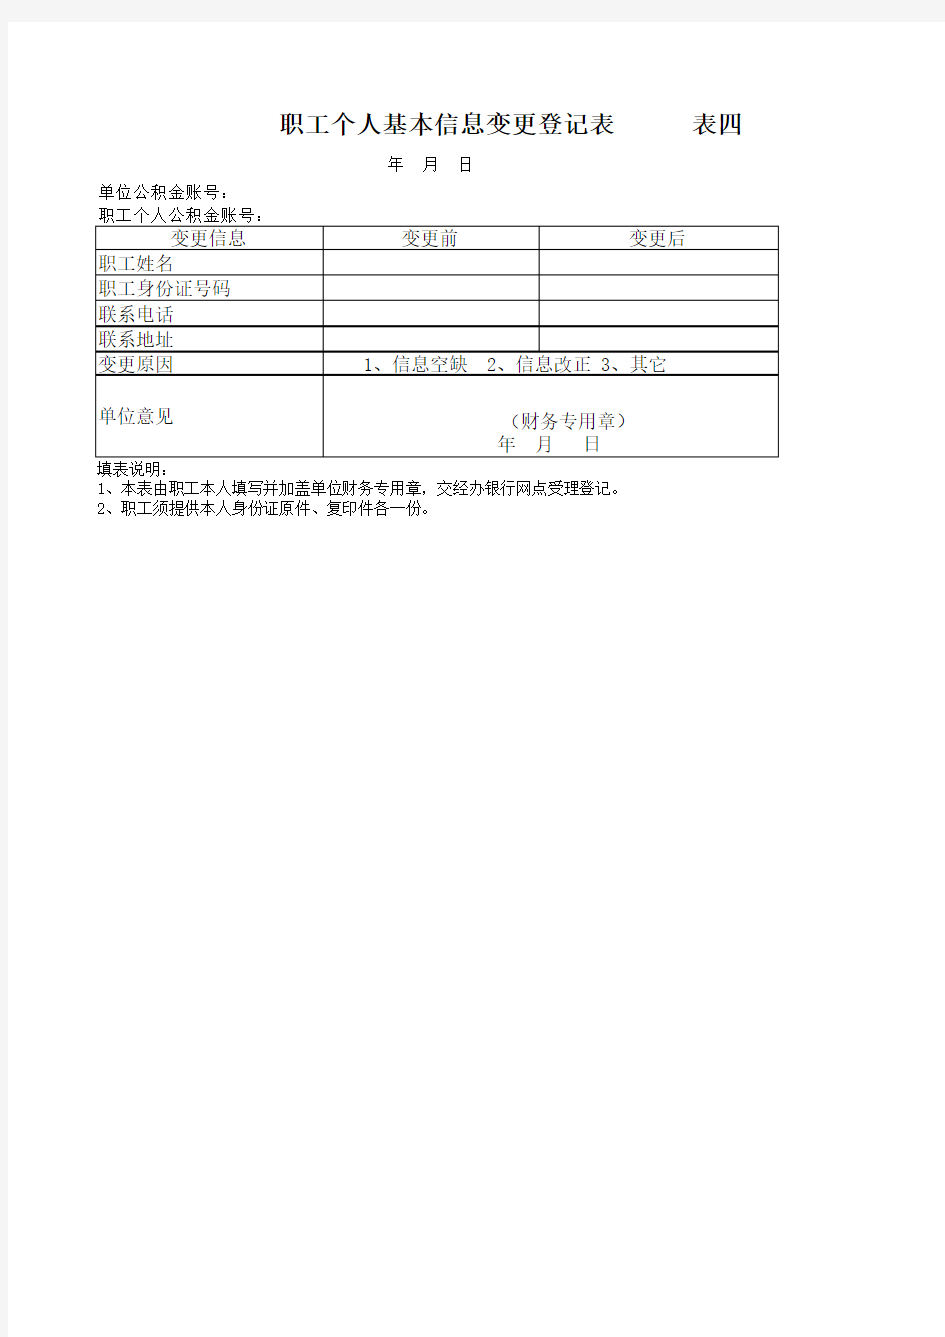 武汉市住房公积金职工个人基本信息变更登记表